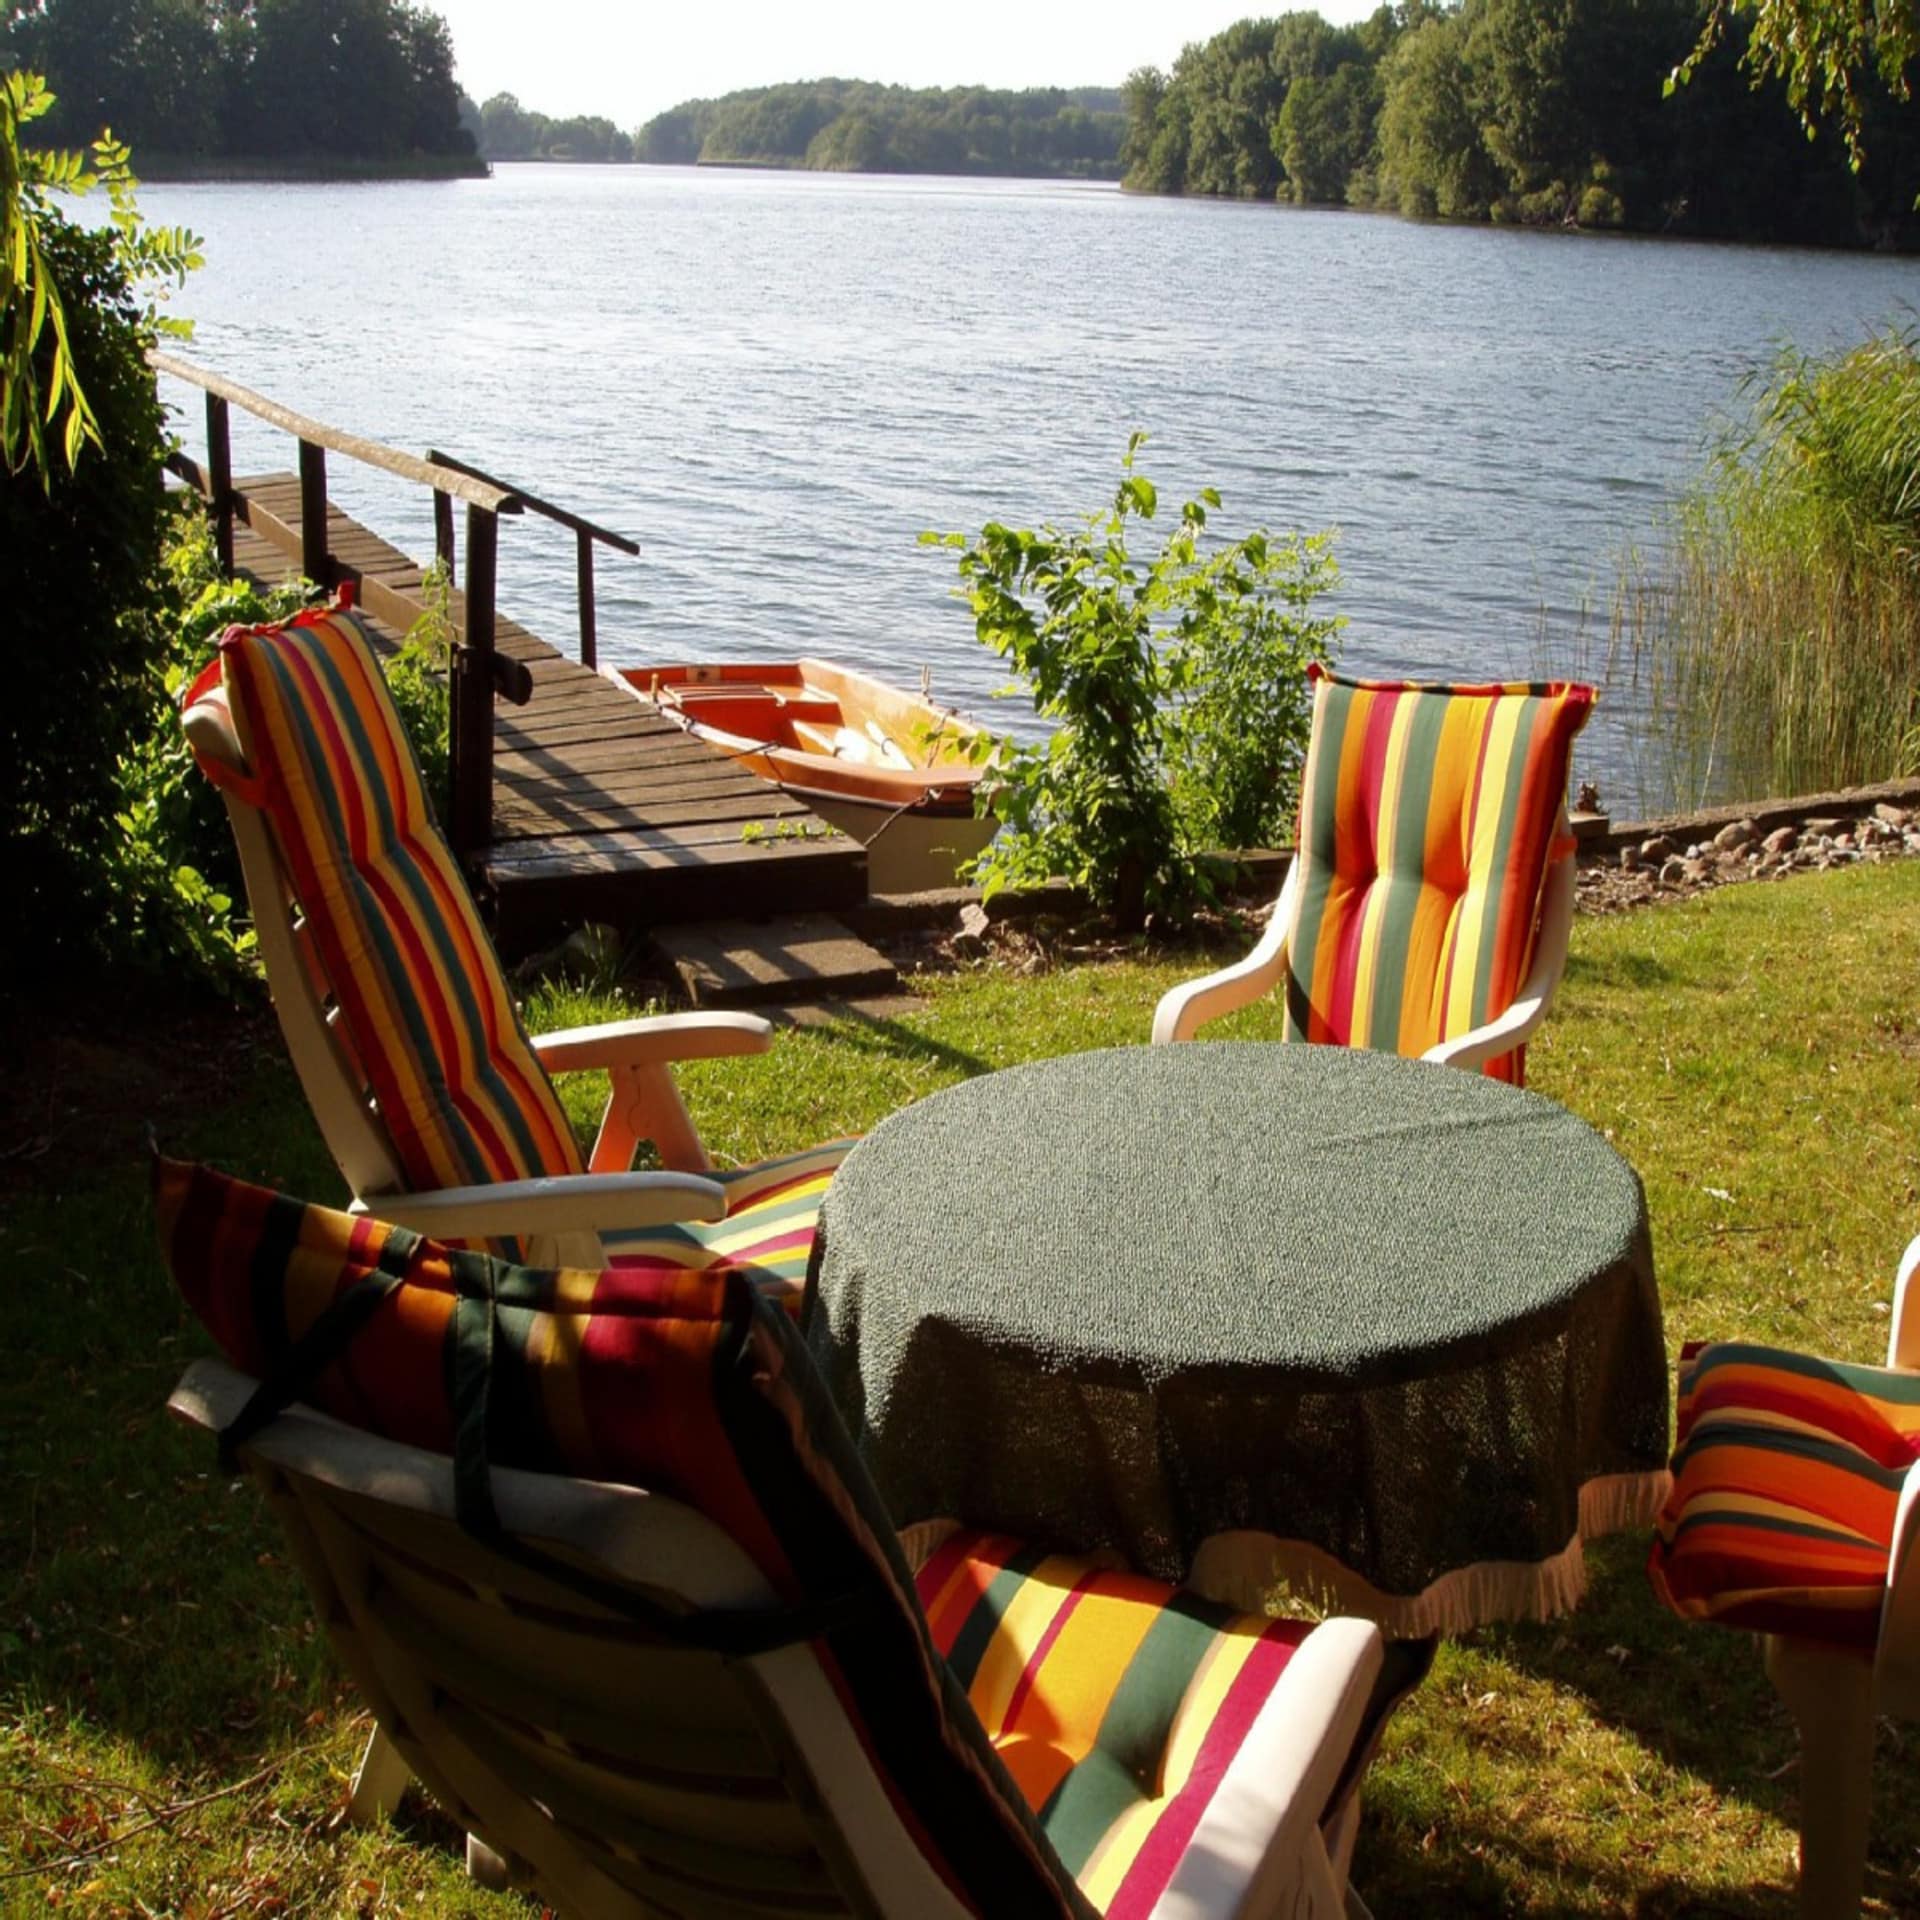 Gartentisch und 4 Stühle in einem Garten direkt am Wasser. Ein Bootssteg und ein Ruderboot sind zu sehen. Die Sonne scheint.